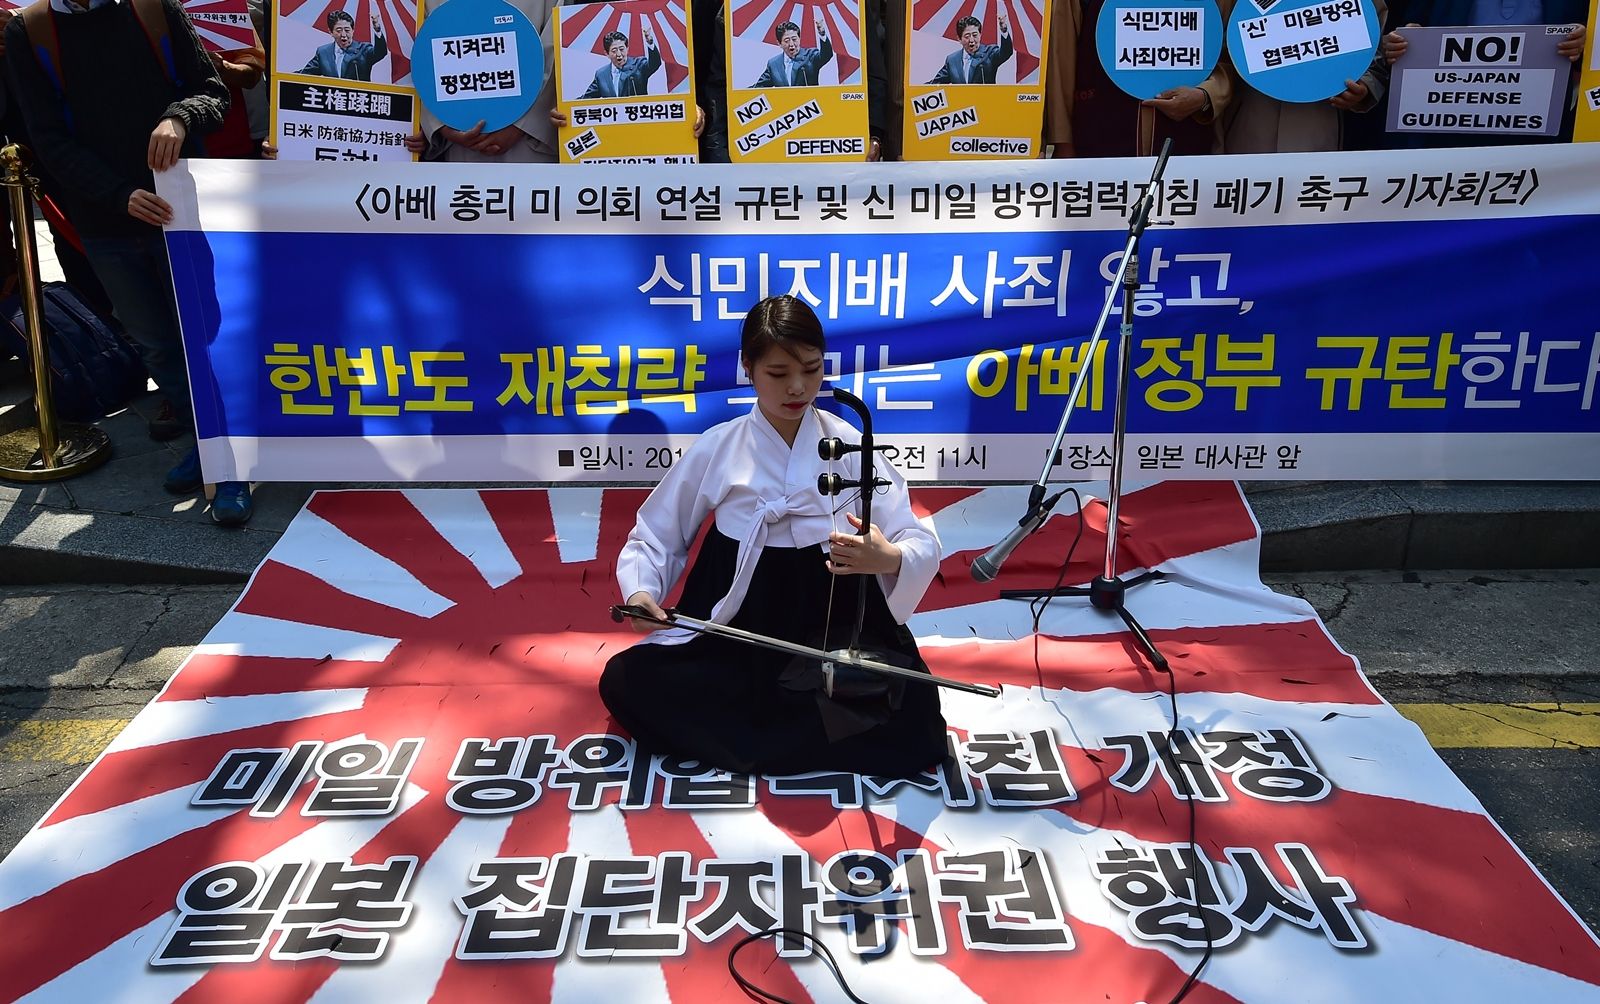 AFP-ผู้ประท้วงเกาหลีใต้เรียกร้องให้ยุติการใช้ธงอาทิตย์อุทัยของญี่ปุ่น.jpg